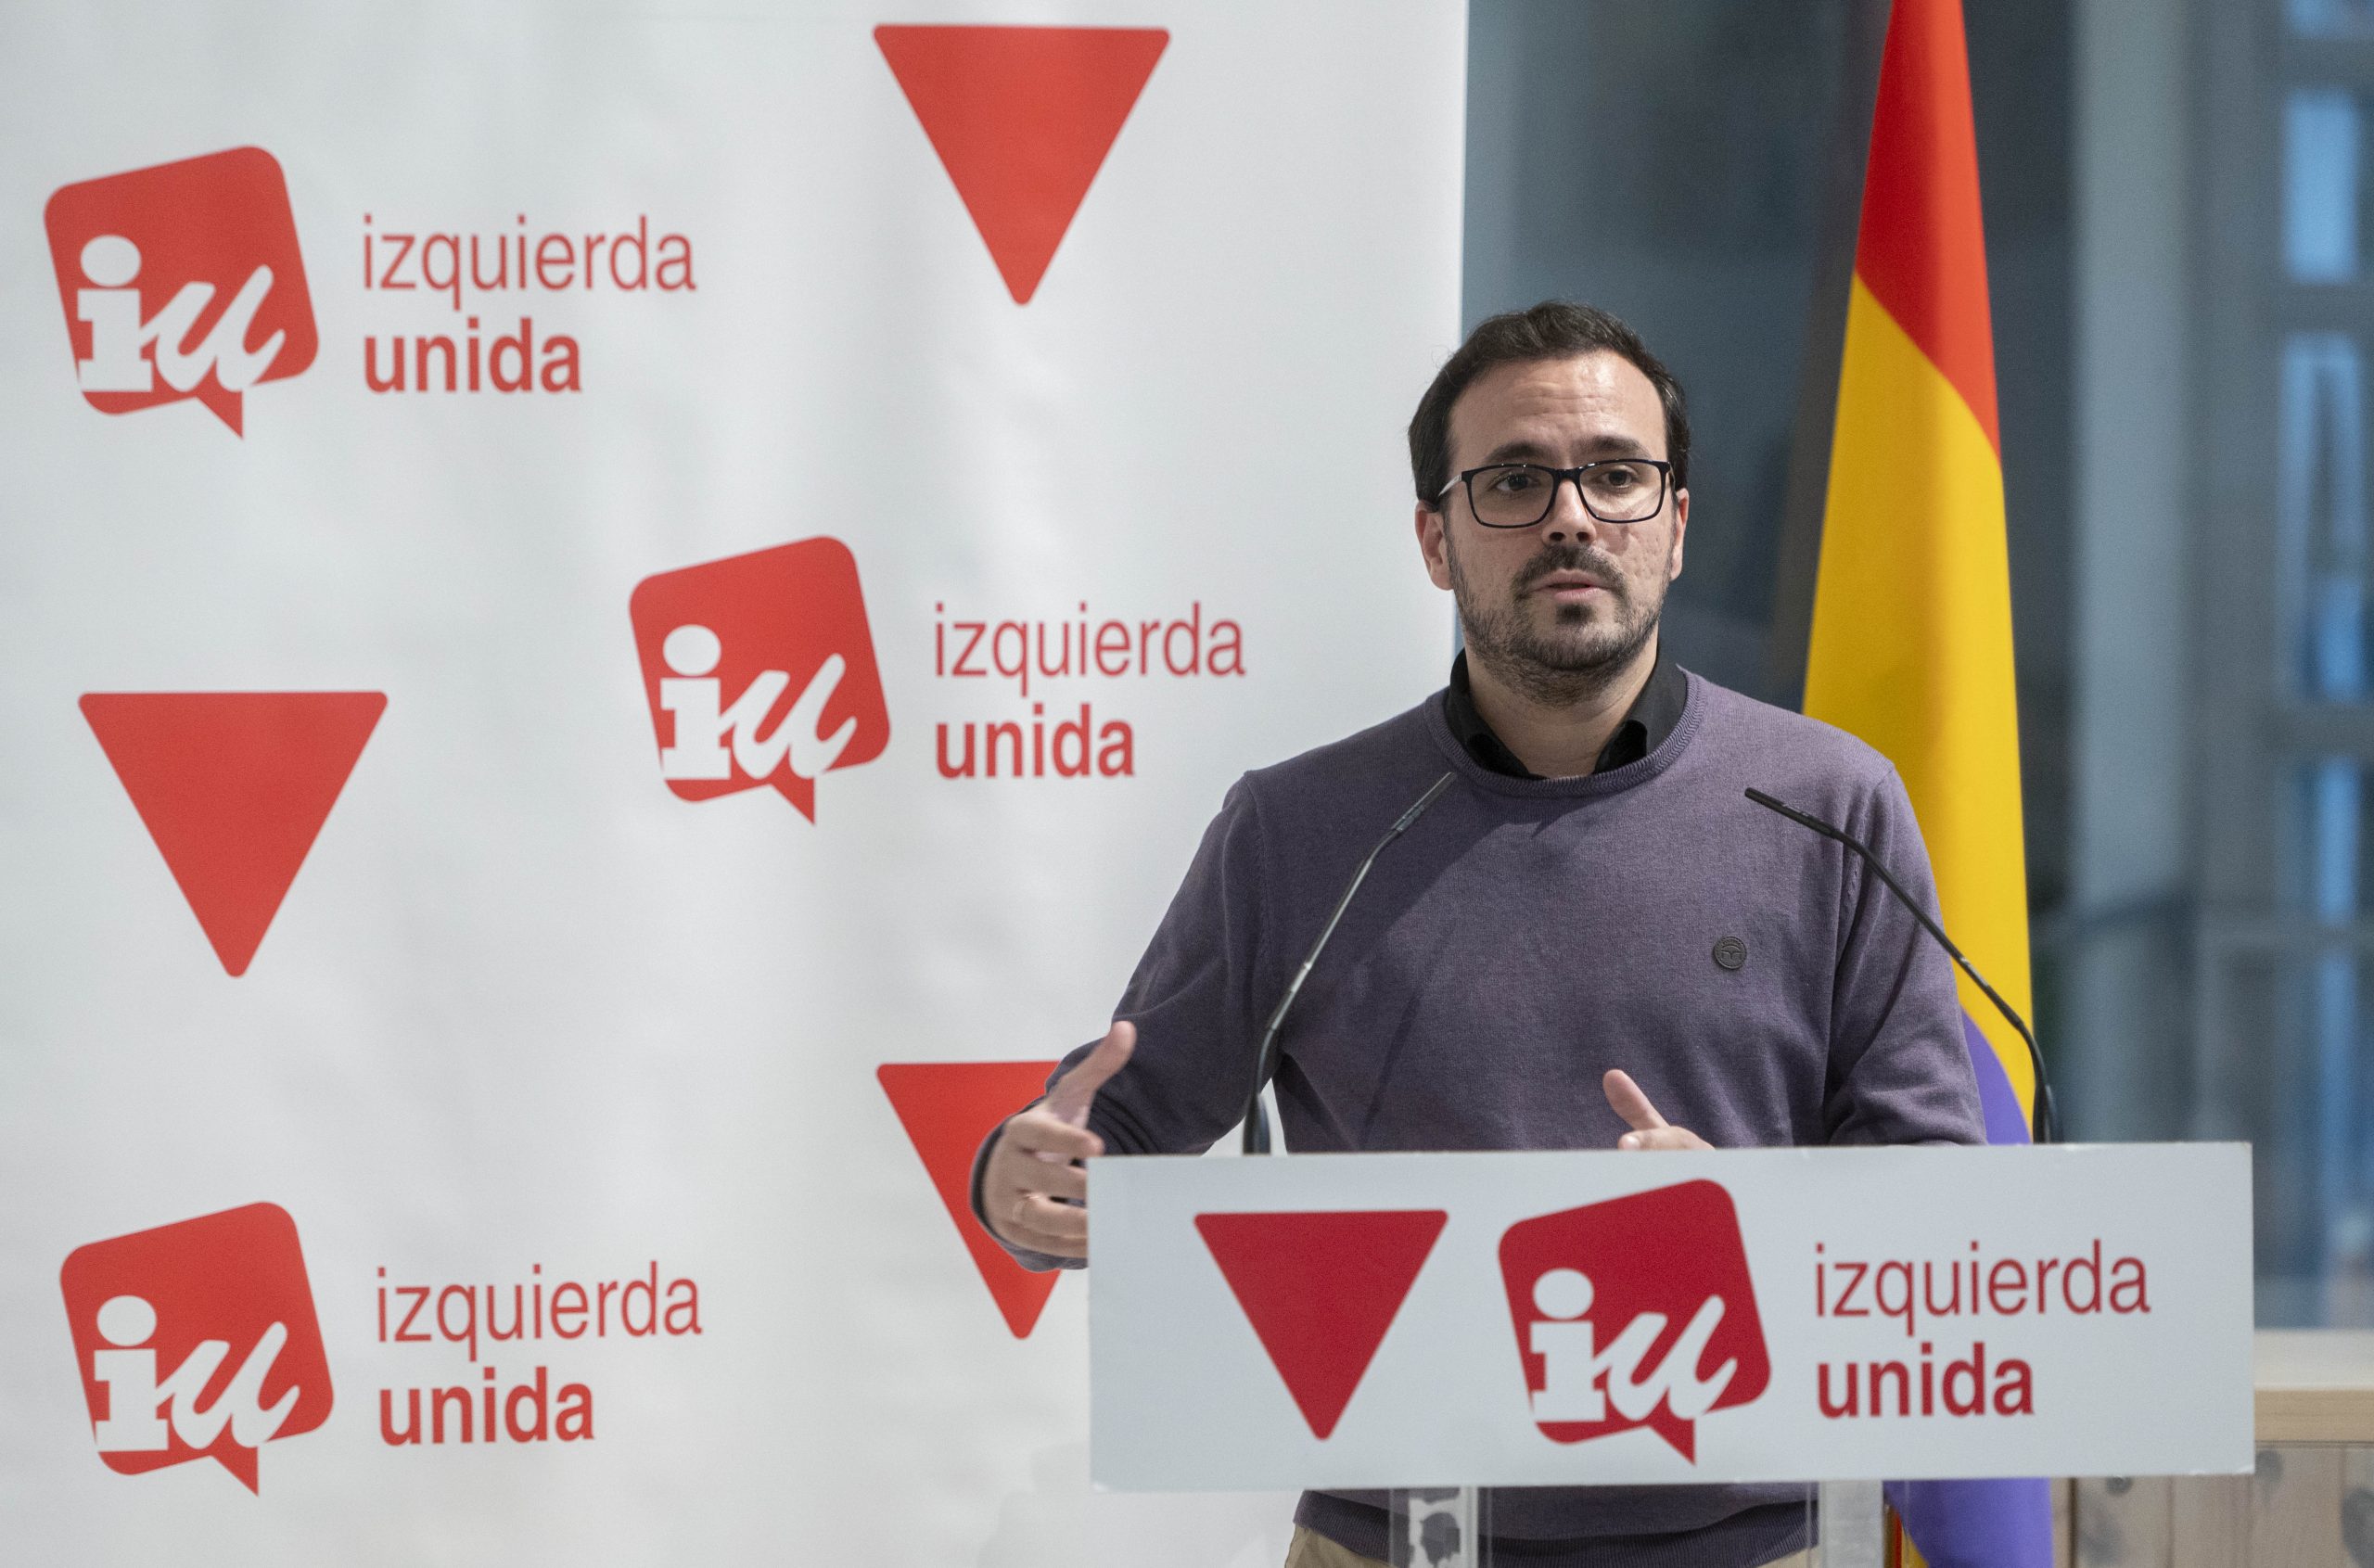 Las reacciones de Izquierda Unida a la polémica sobre Alberto Garzón